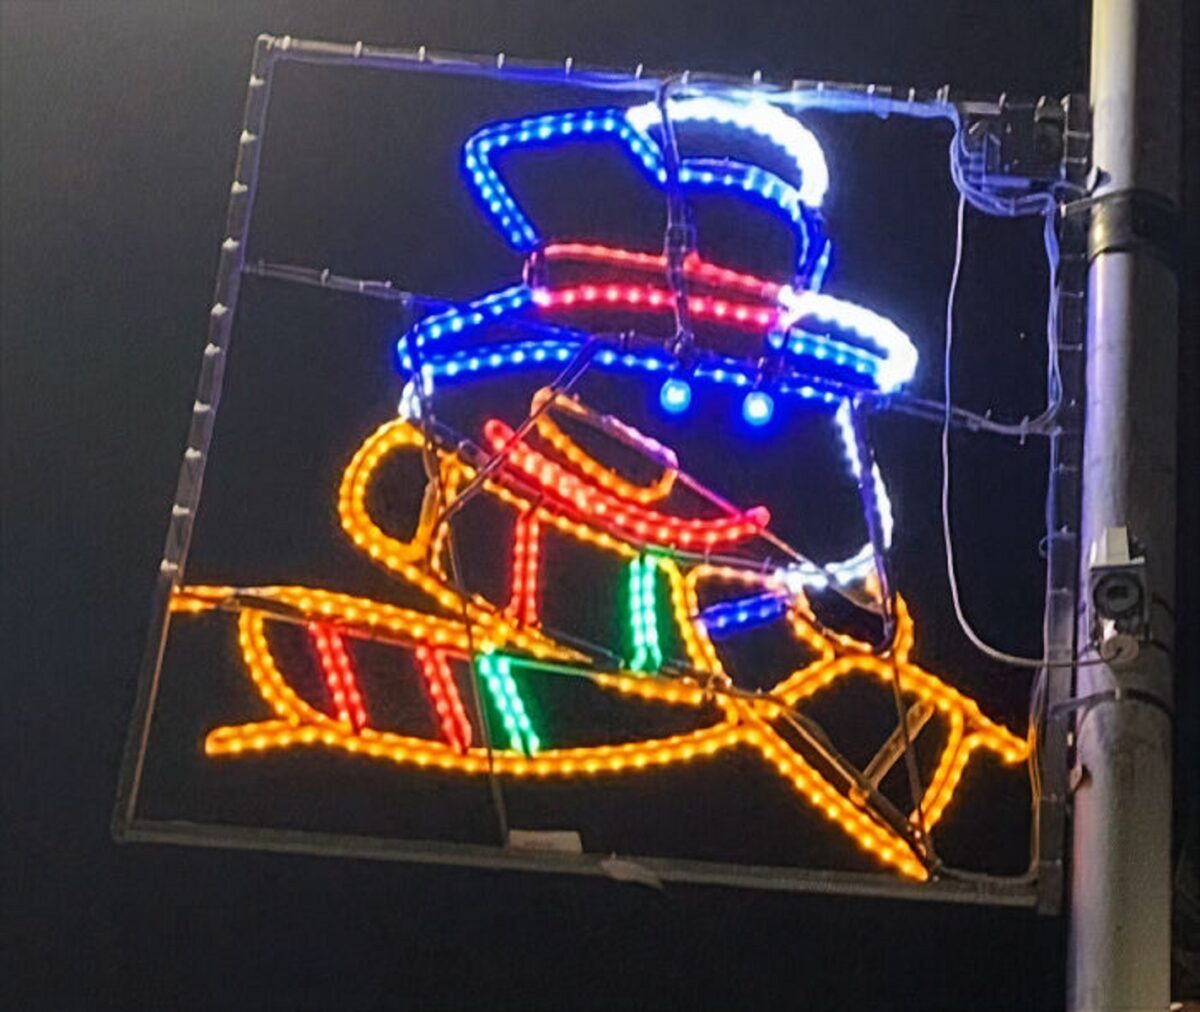 Na Escocia as criancas projetam suas luzes de Natal e resultado e adoravel 16